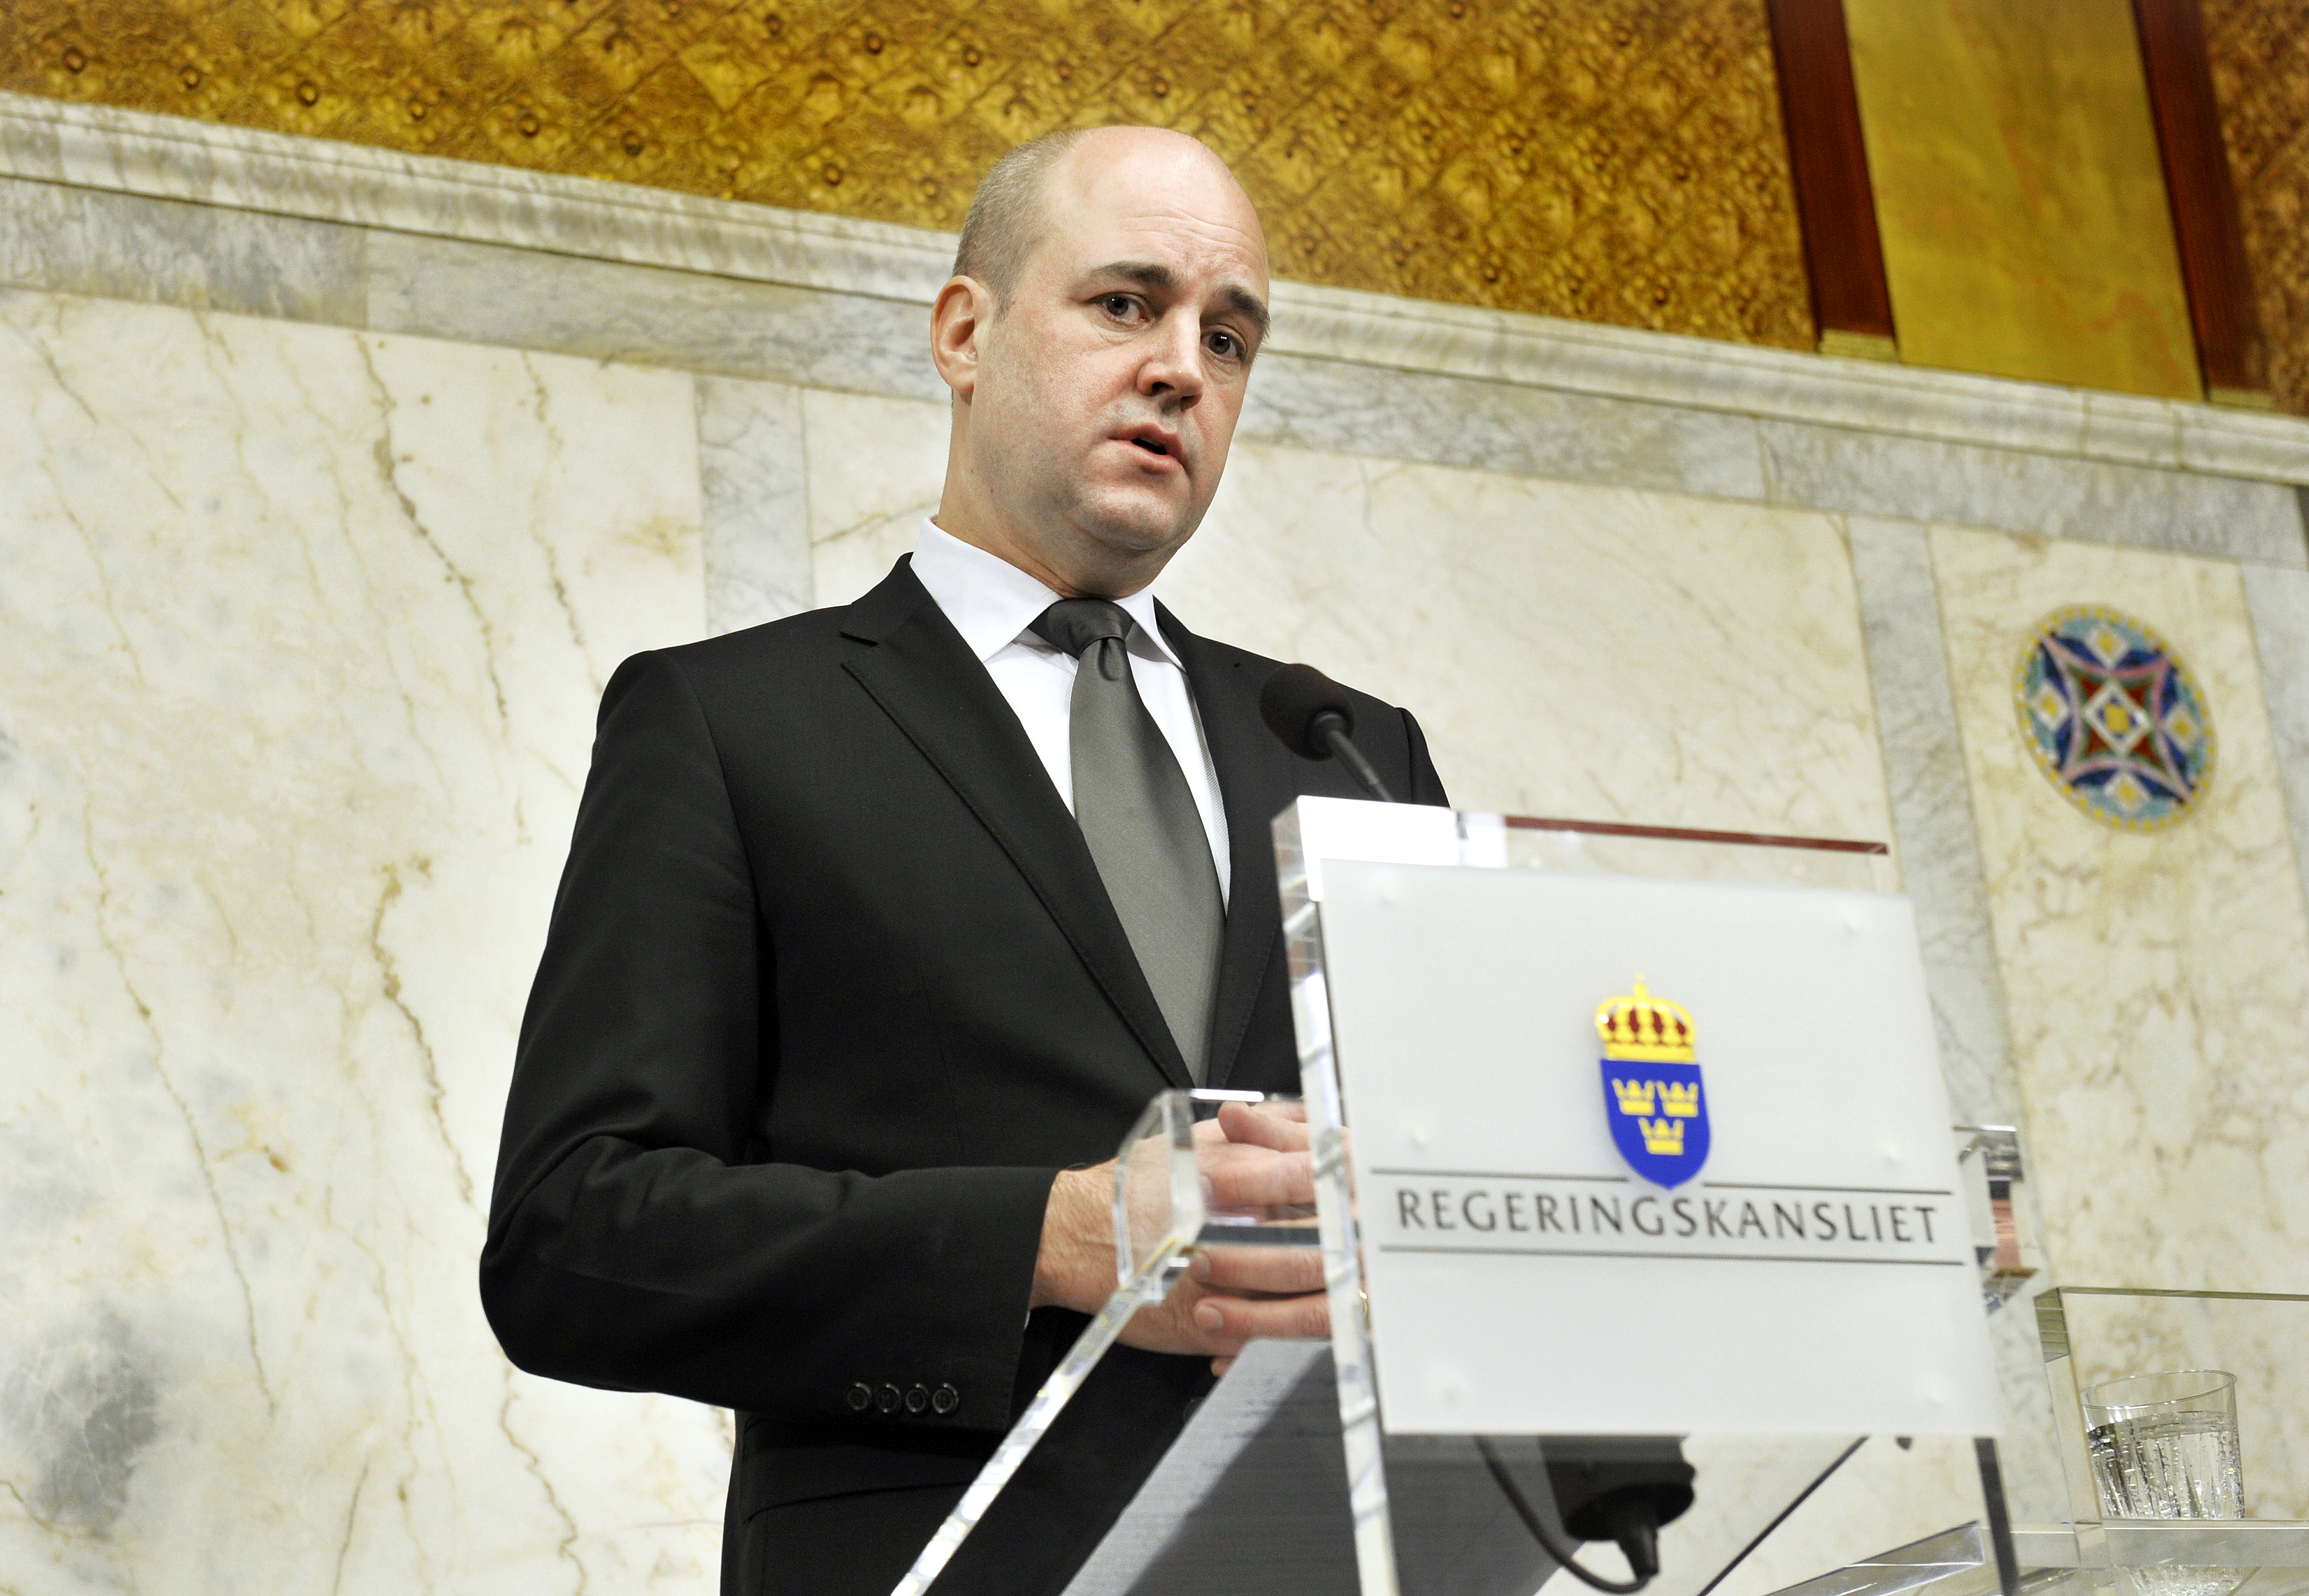 Och ska få presenter av statsminister Reinfeldt.